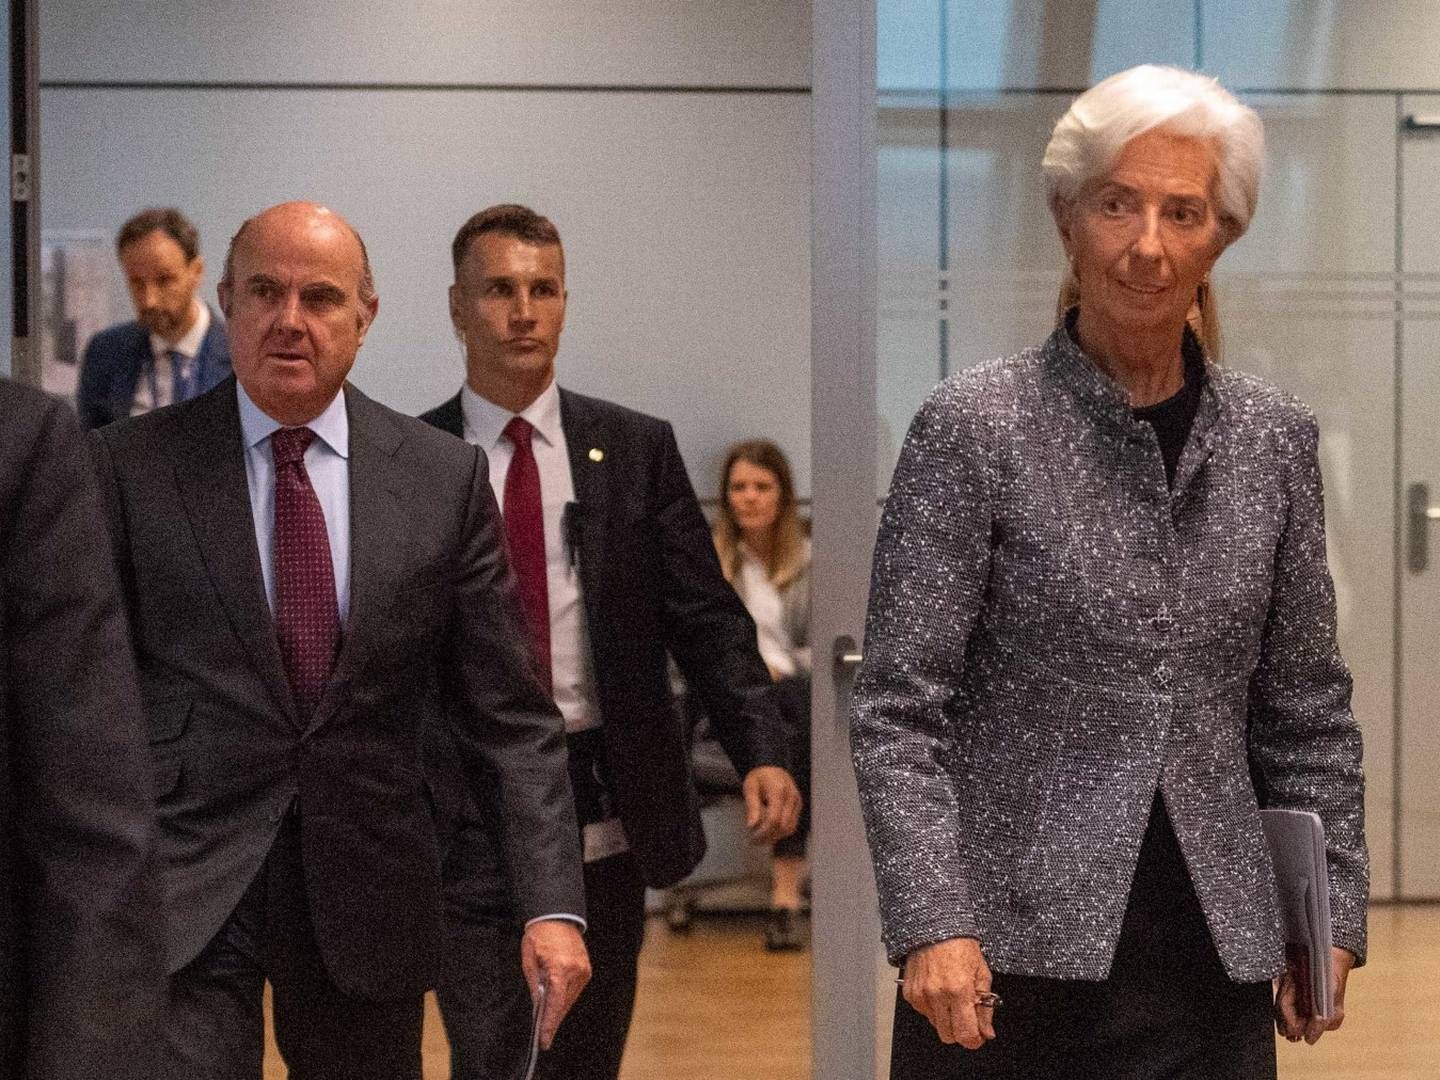 EZB-Präsidentin Christine Lagarde. | Foto: picture alliance / Sven Simon